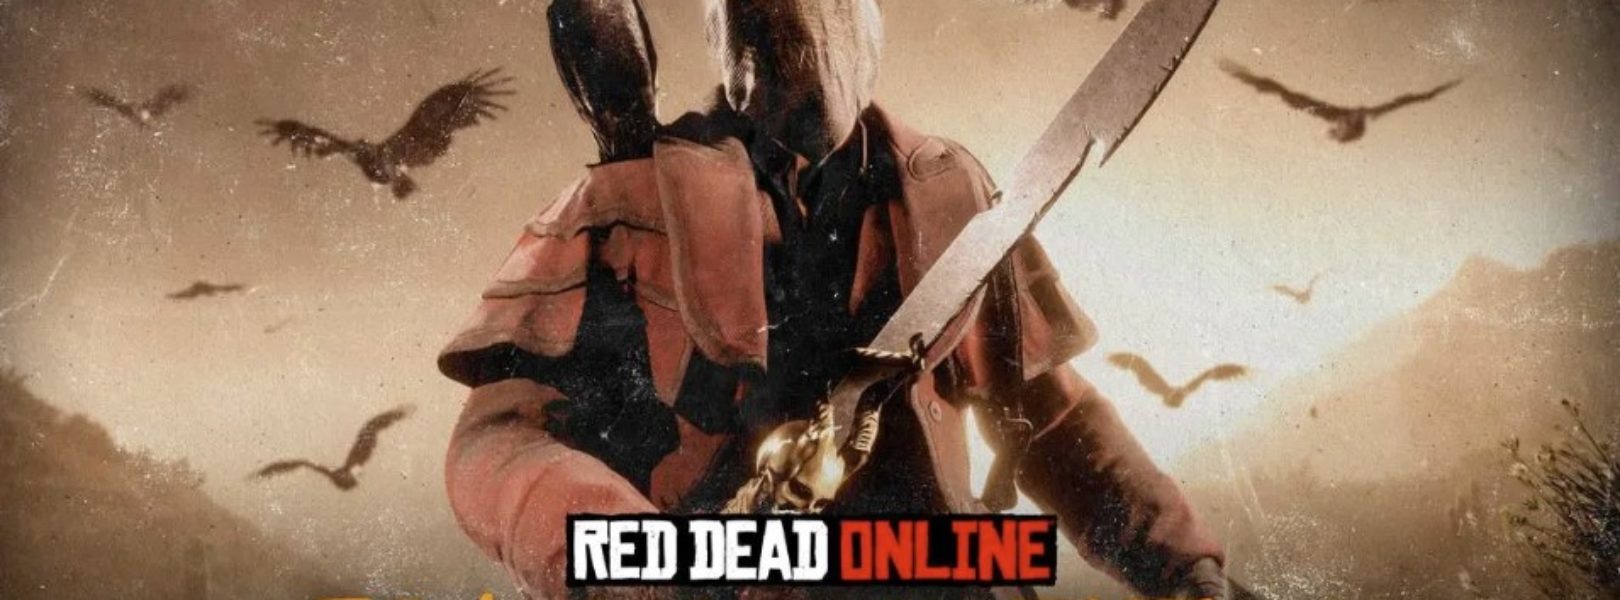 Red Dead Online se actualiza; bonificaciones, mapa del tesoro gratis y más